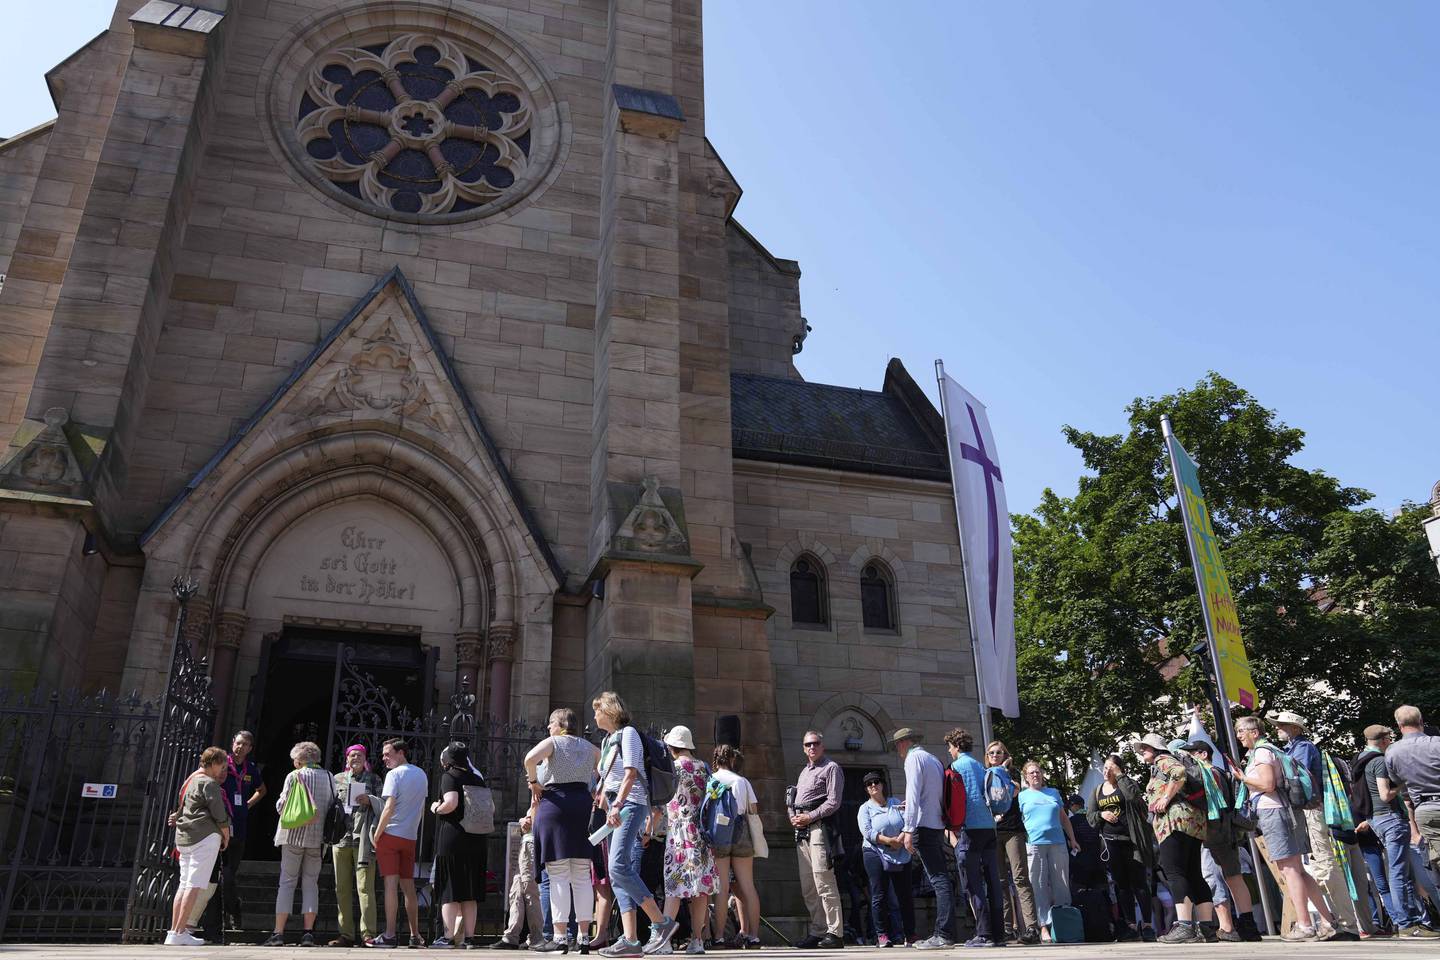 Køen var lang av kirkegjengere som ville oppleve gudstjenesten hvor kunstig intelligens forrettet.
Foto: Matthias Schrader / AP / NTB